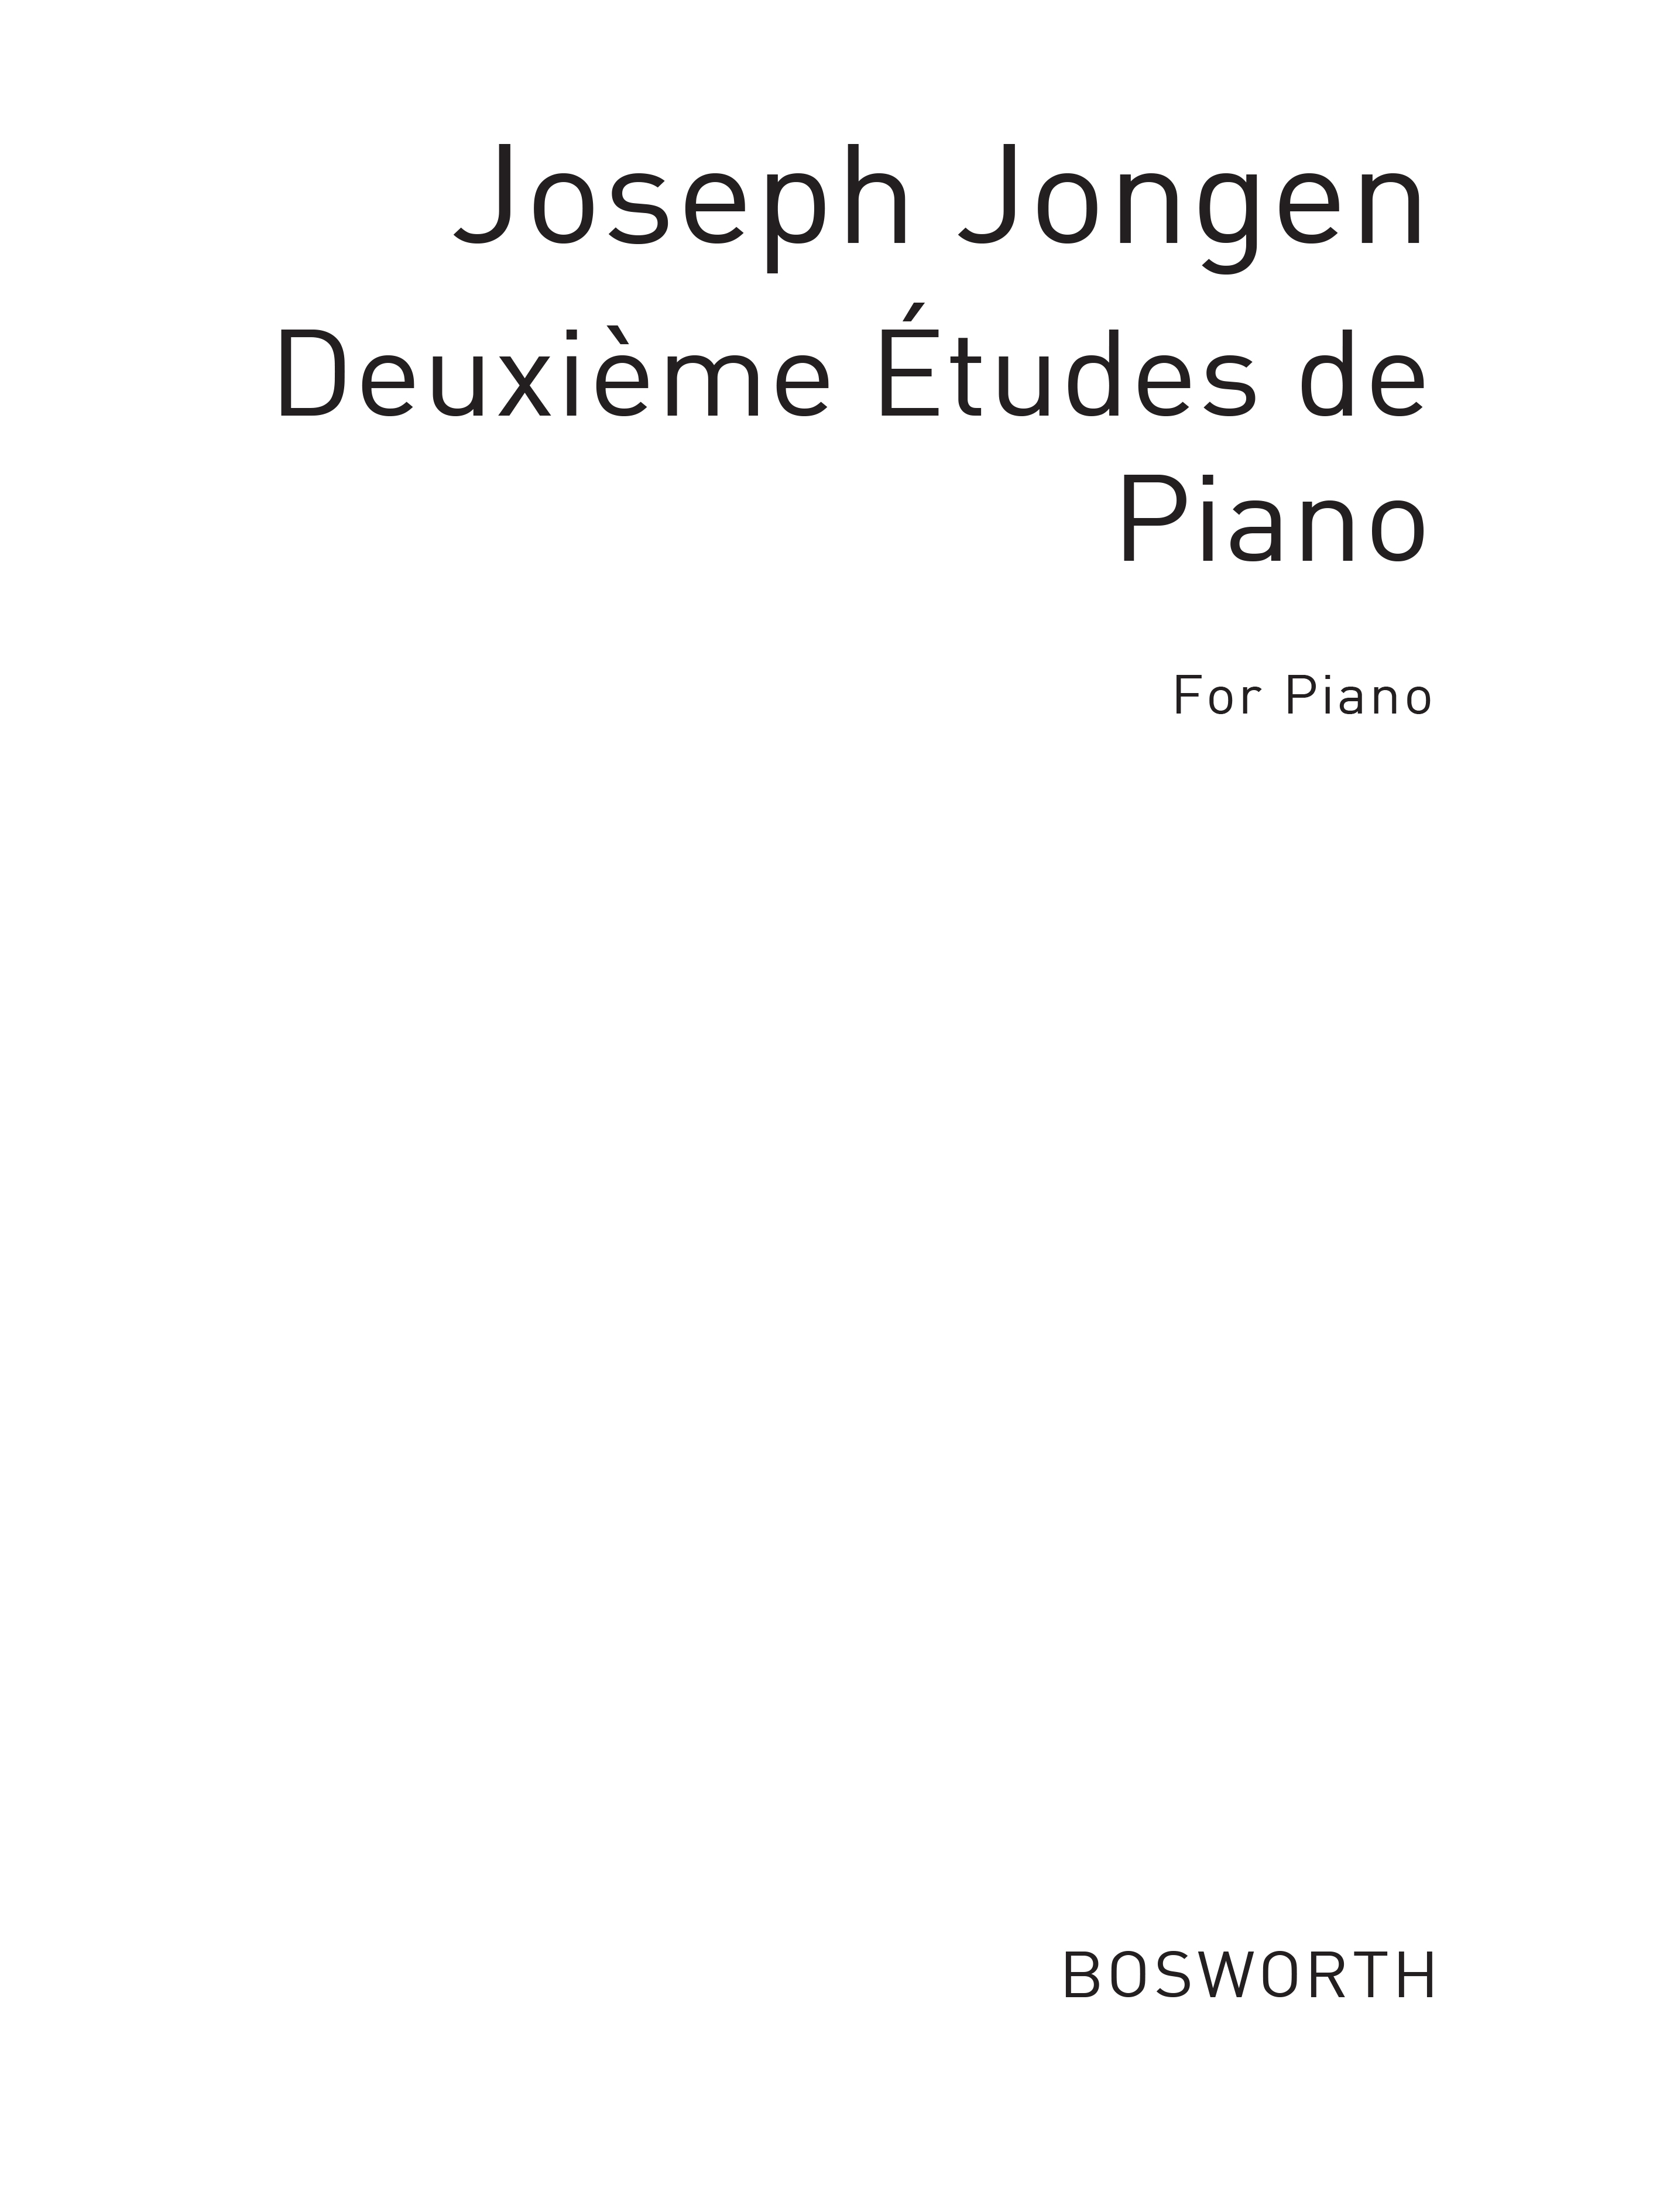 Joseph Jongen: Trois Etudes De Concert No.2 Op.65 In F Sharp Minor